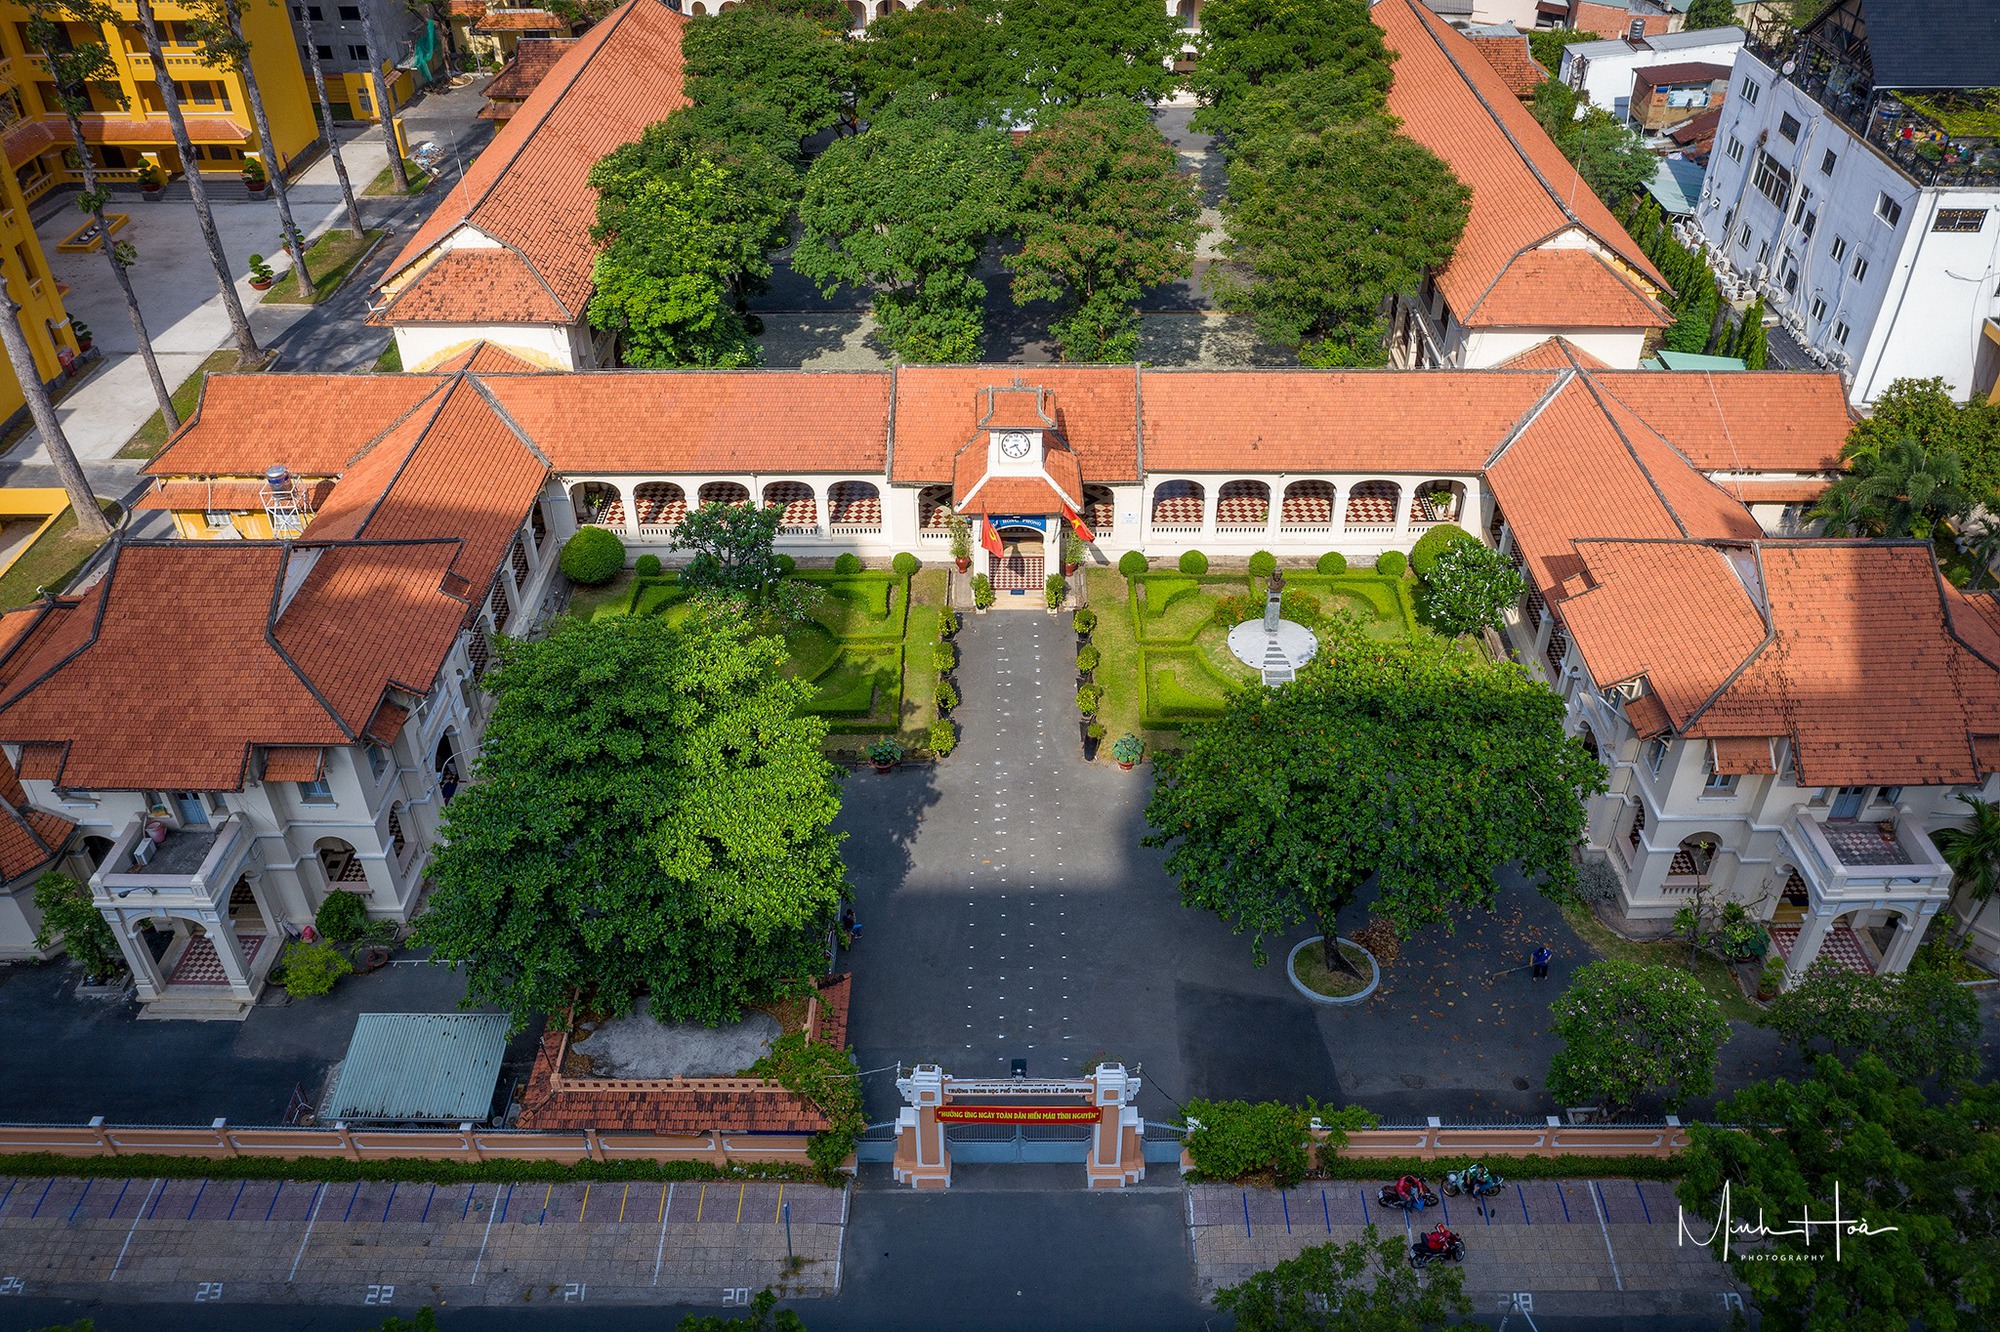 Kiến trúc độc đáo của ngôi trường gần 100 tuổi, nơi 2 vị nguyên Chủ tịch nước từng học  - Ảnh 1.